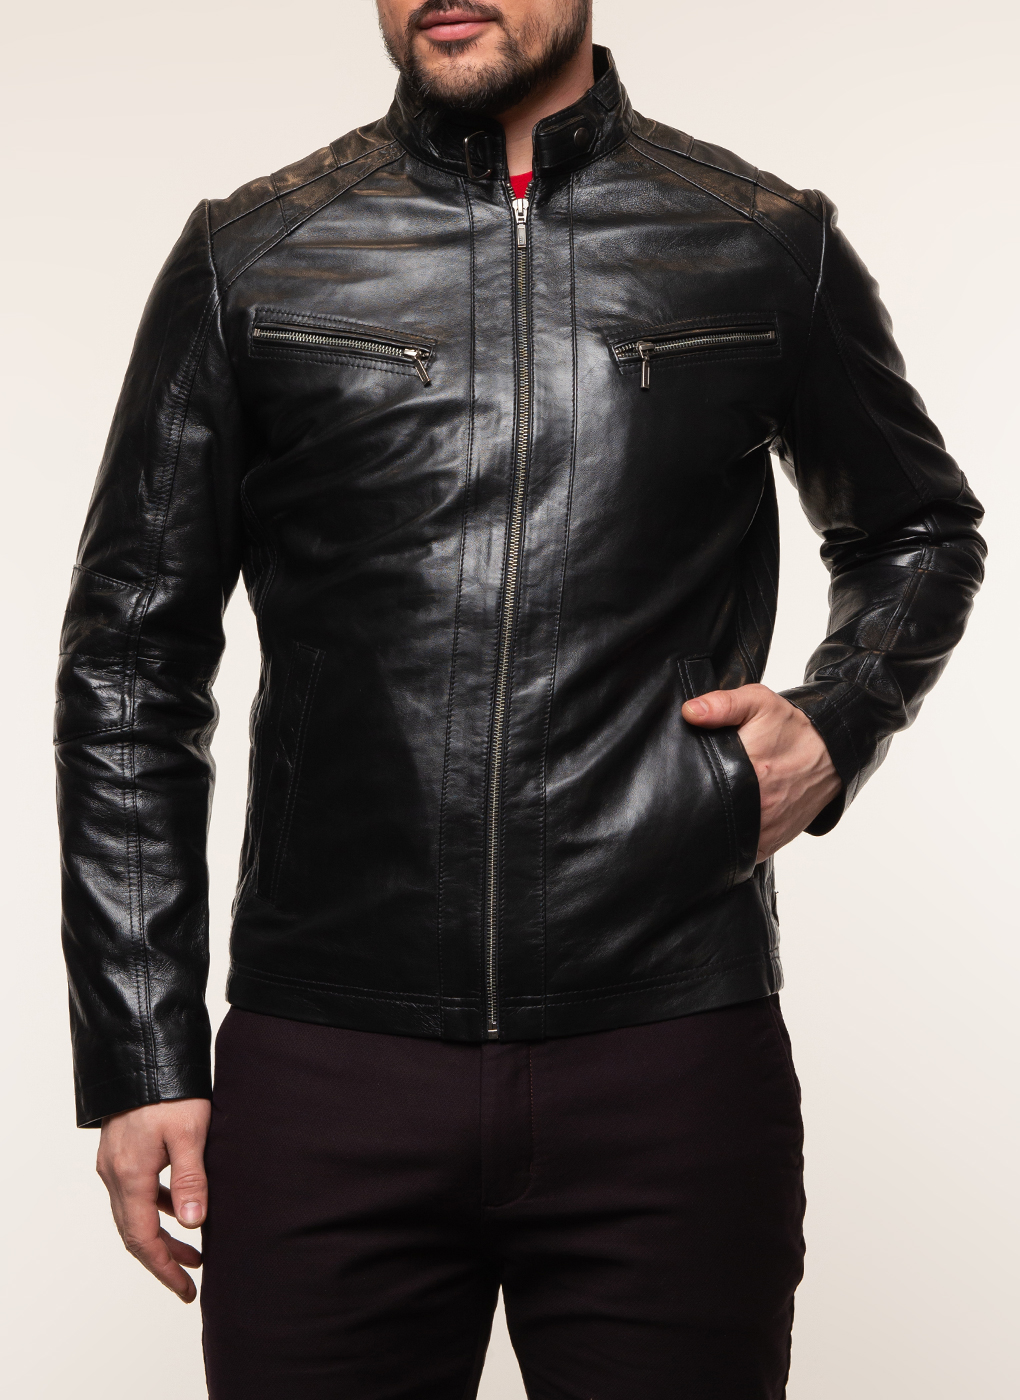 Кожаная куртка мужская Каляев 62647 черная 58 RU